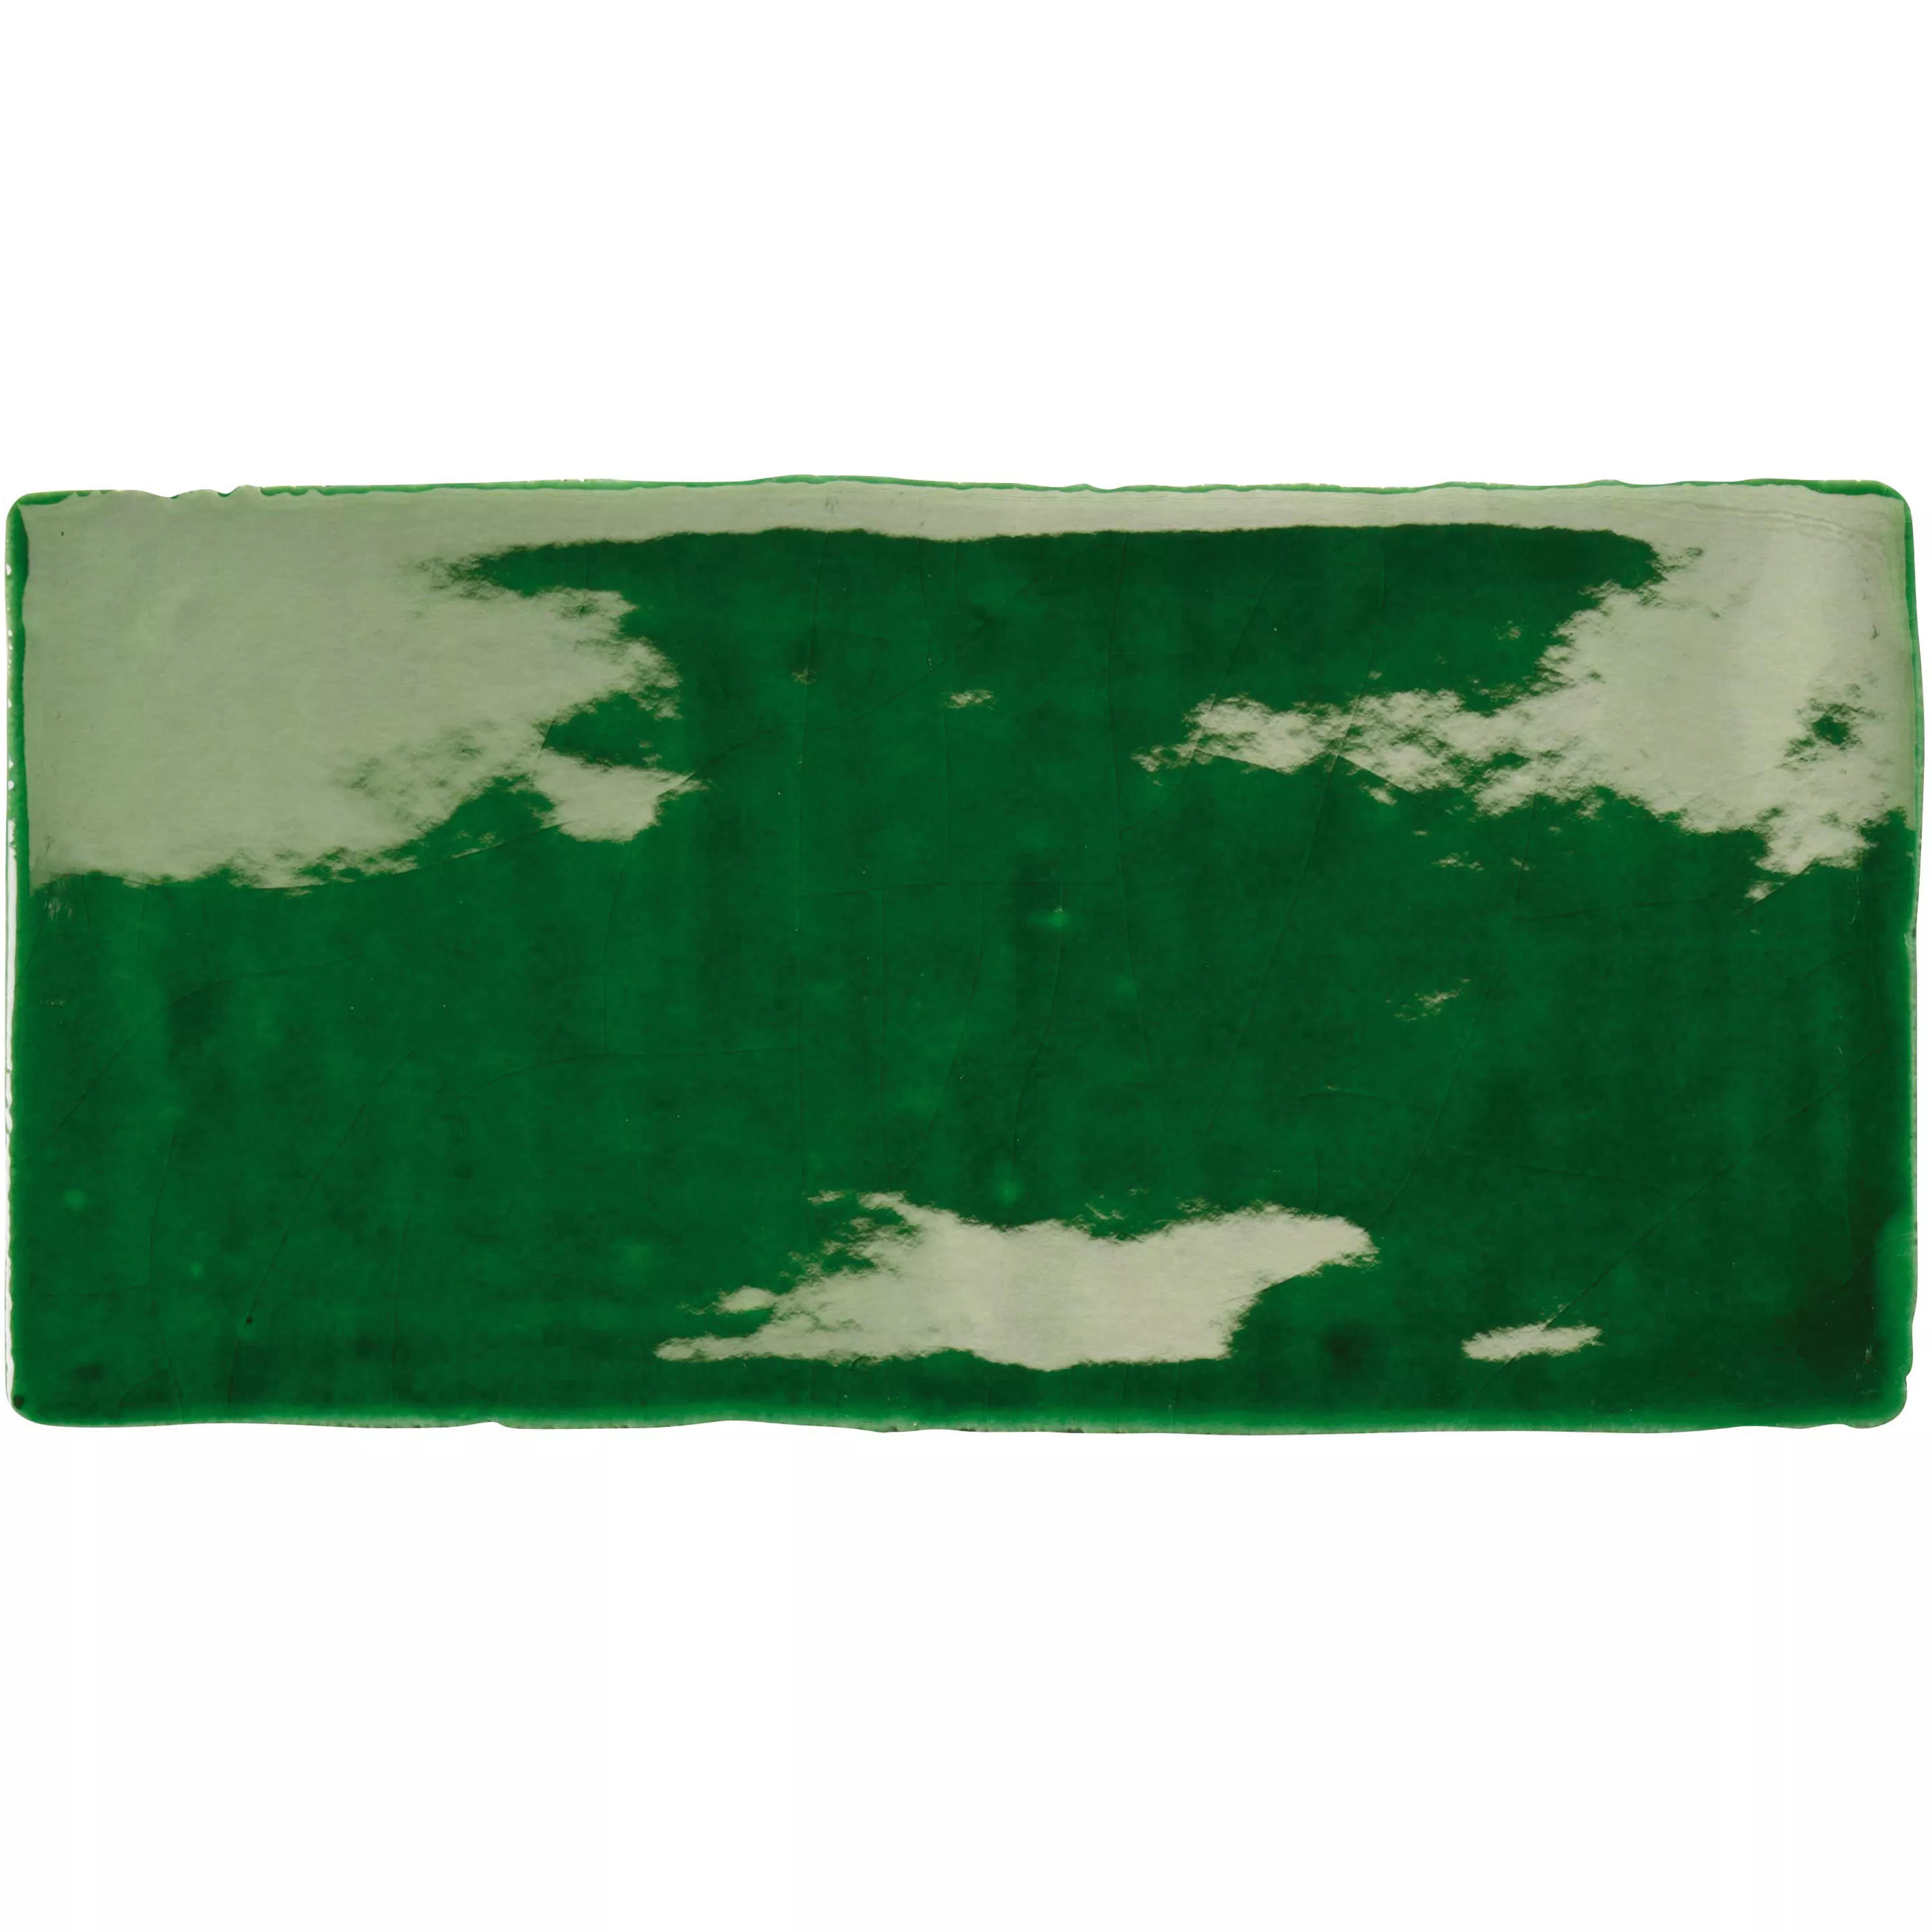 Muestra Revestimiento Algier Hecho A Mano 7,5x15cm Verde Esmeralda